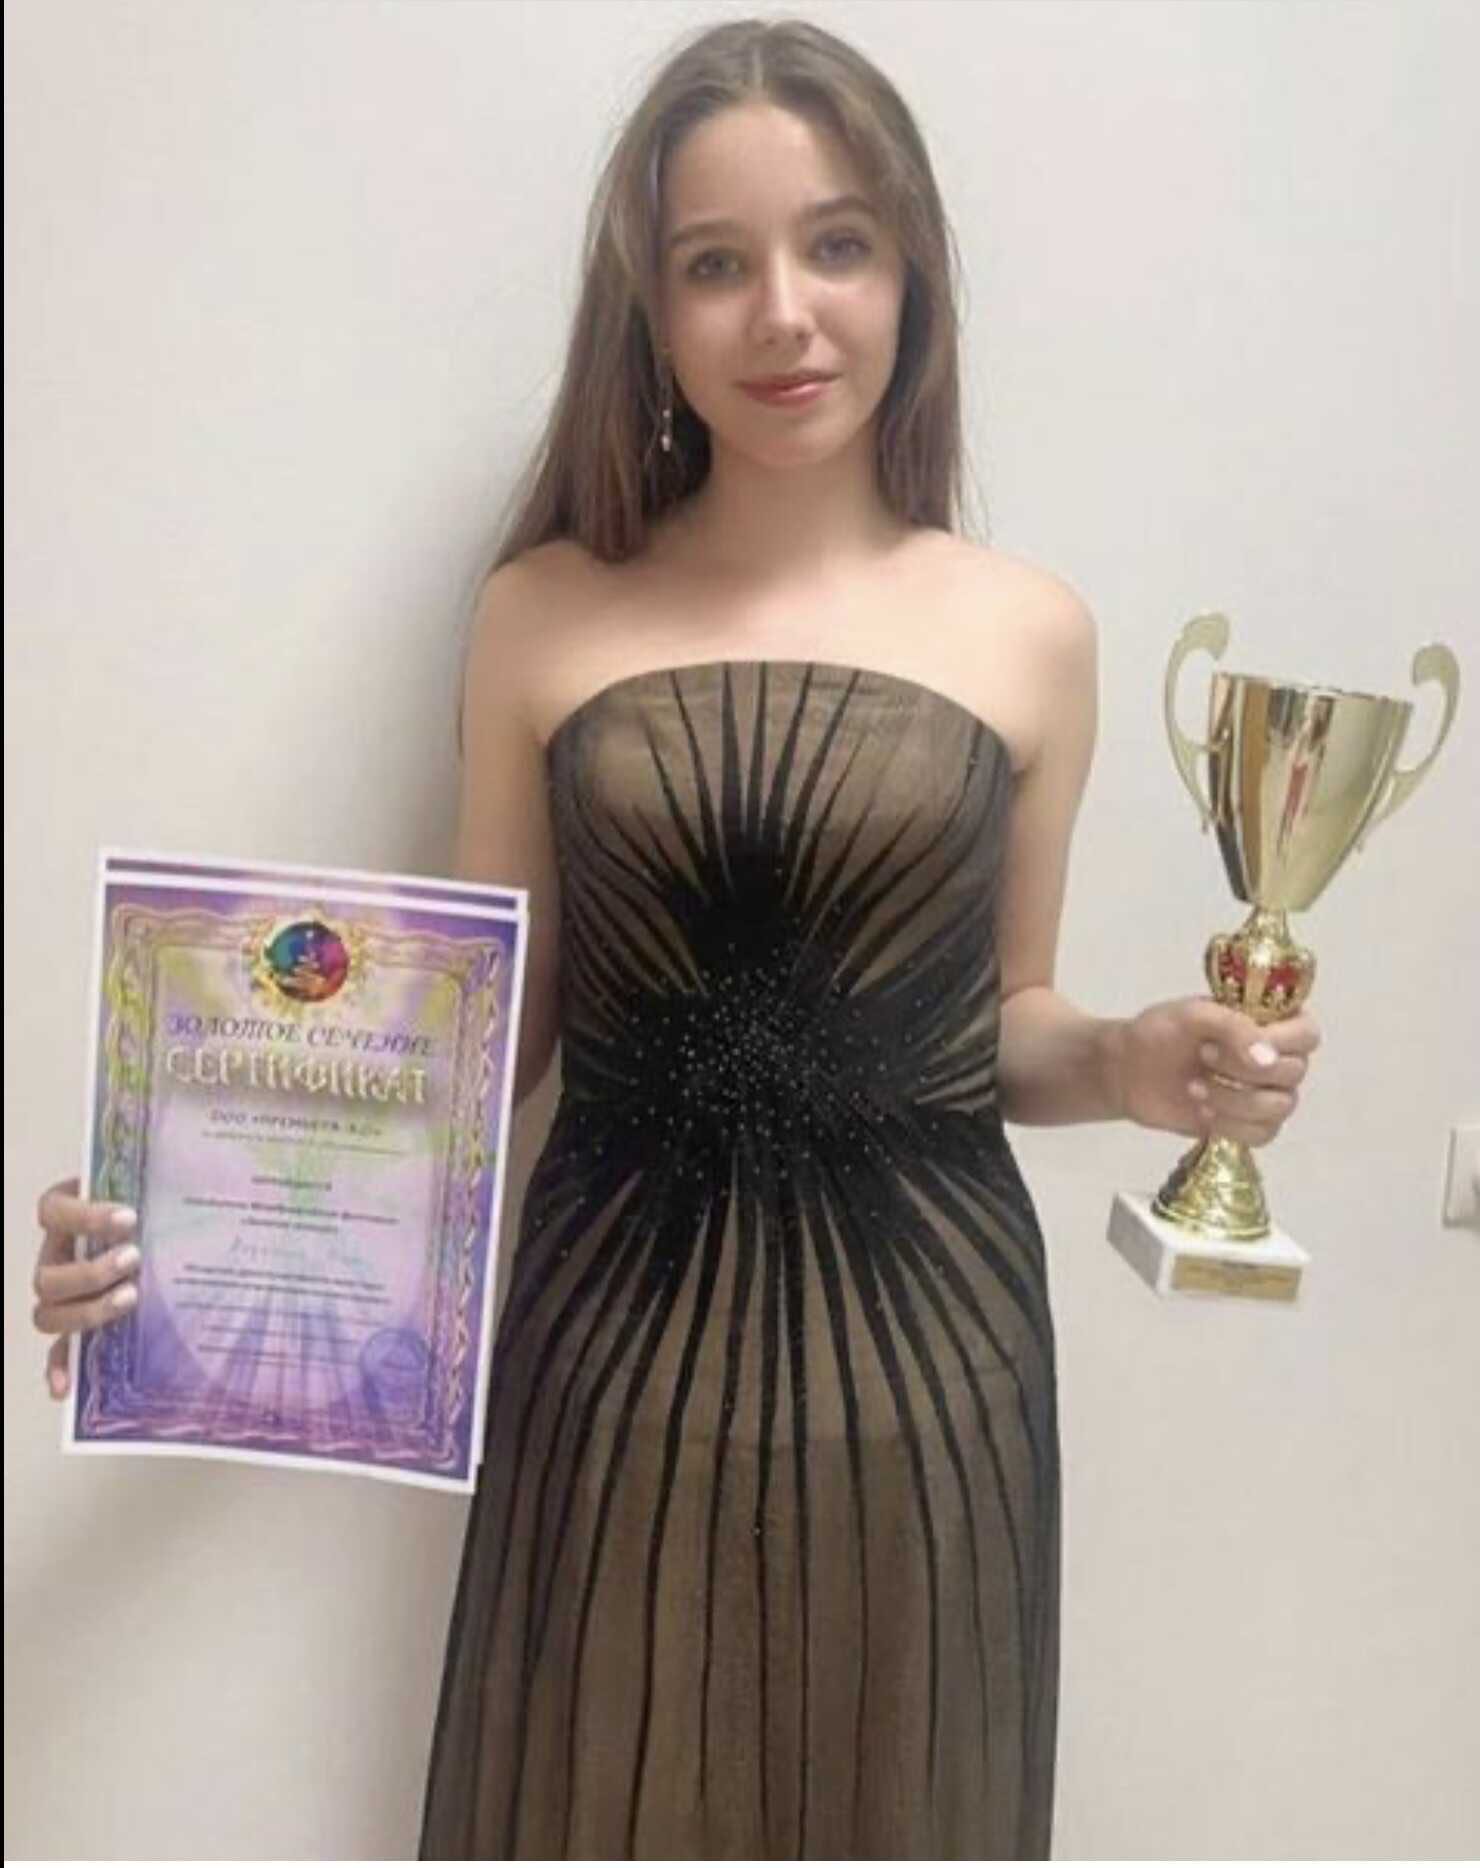 Дочь Юлии Началовой выиграла гран-при музыкального конкурса